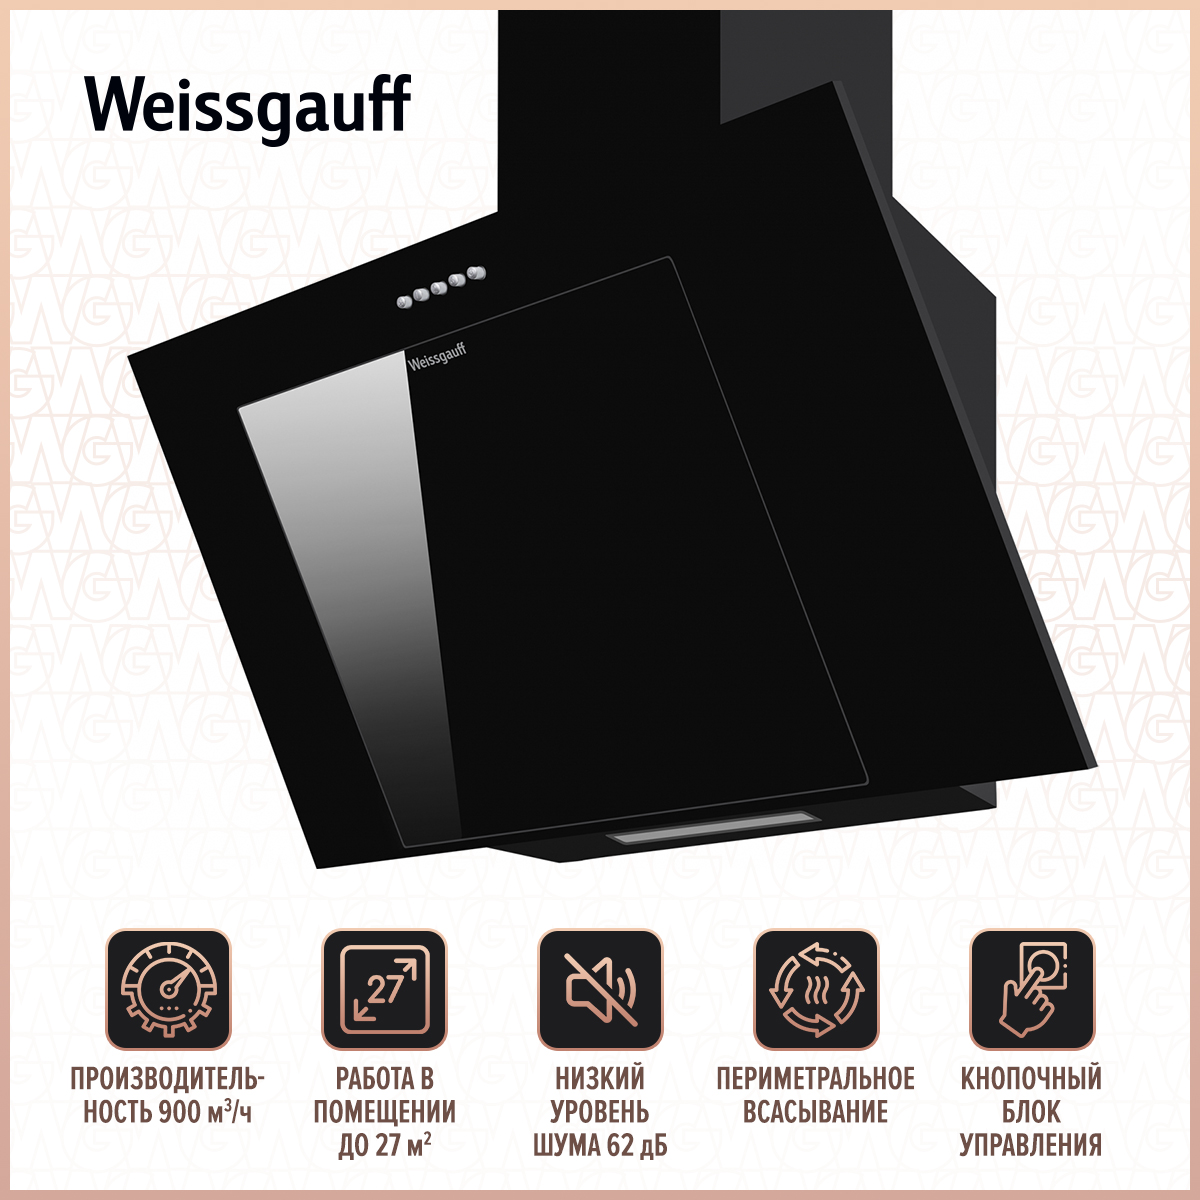 Вытяжка настенная Weissgauff Sigma 60 PB BL Black вытяжка встраиваемая weissgauff dubhe 60 pb bl black